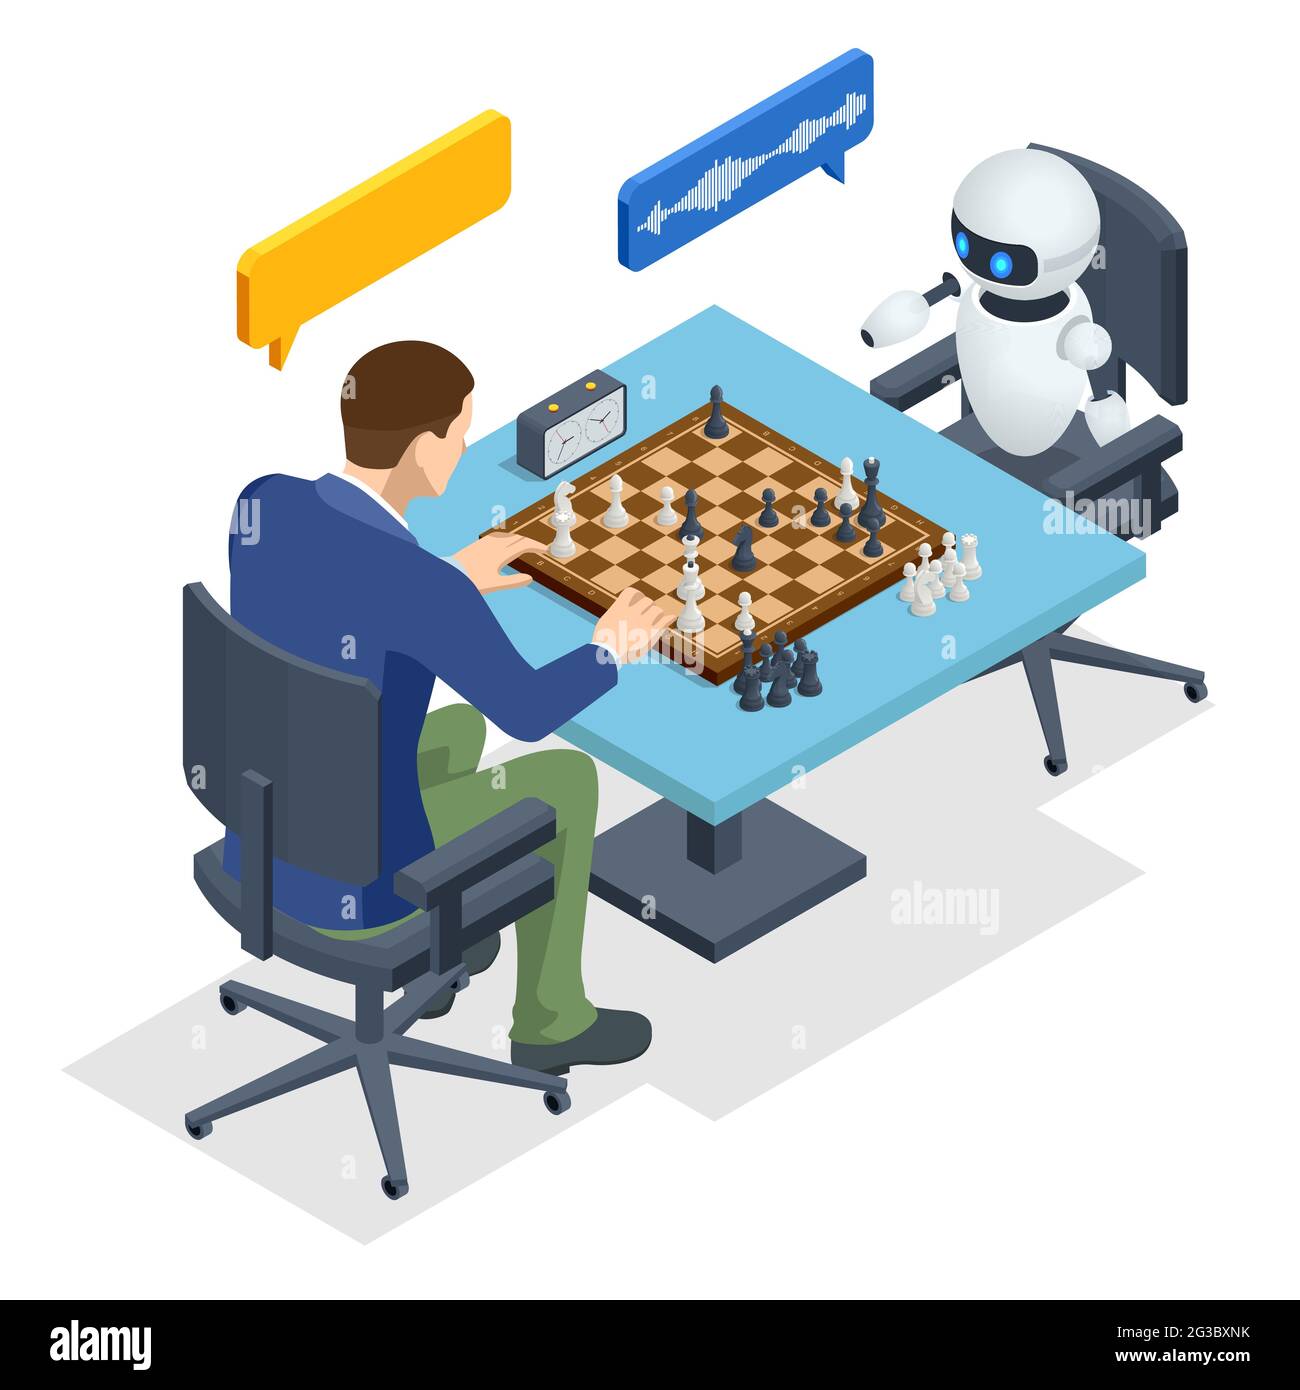 Chess-Playing Machines 